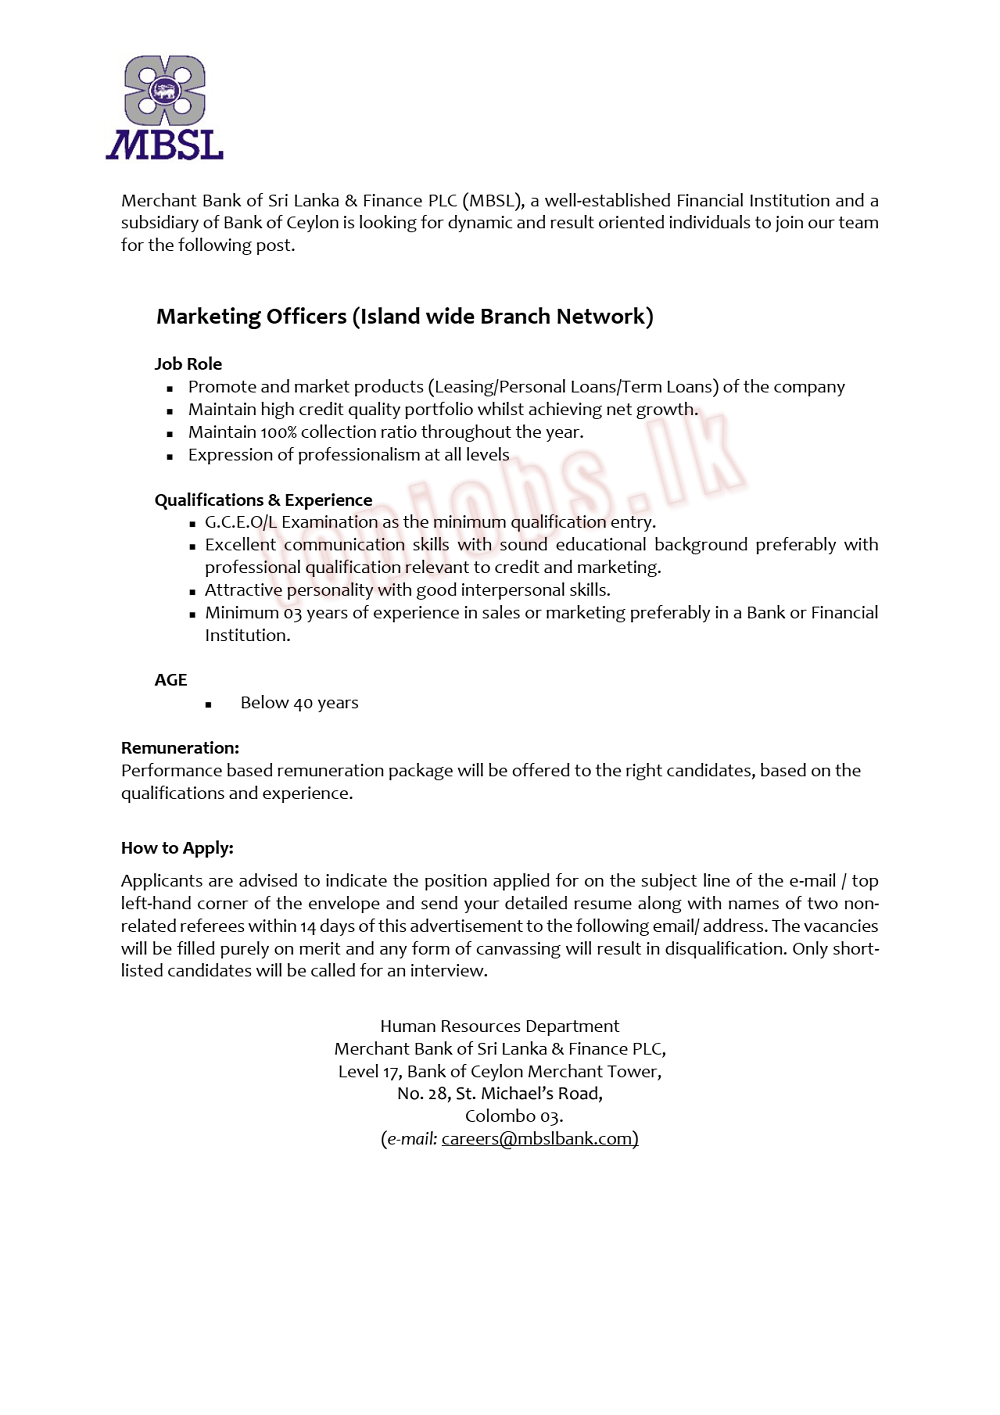 Marketing Officers-MBSl-www.jobmarket.lk